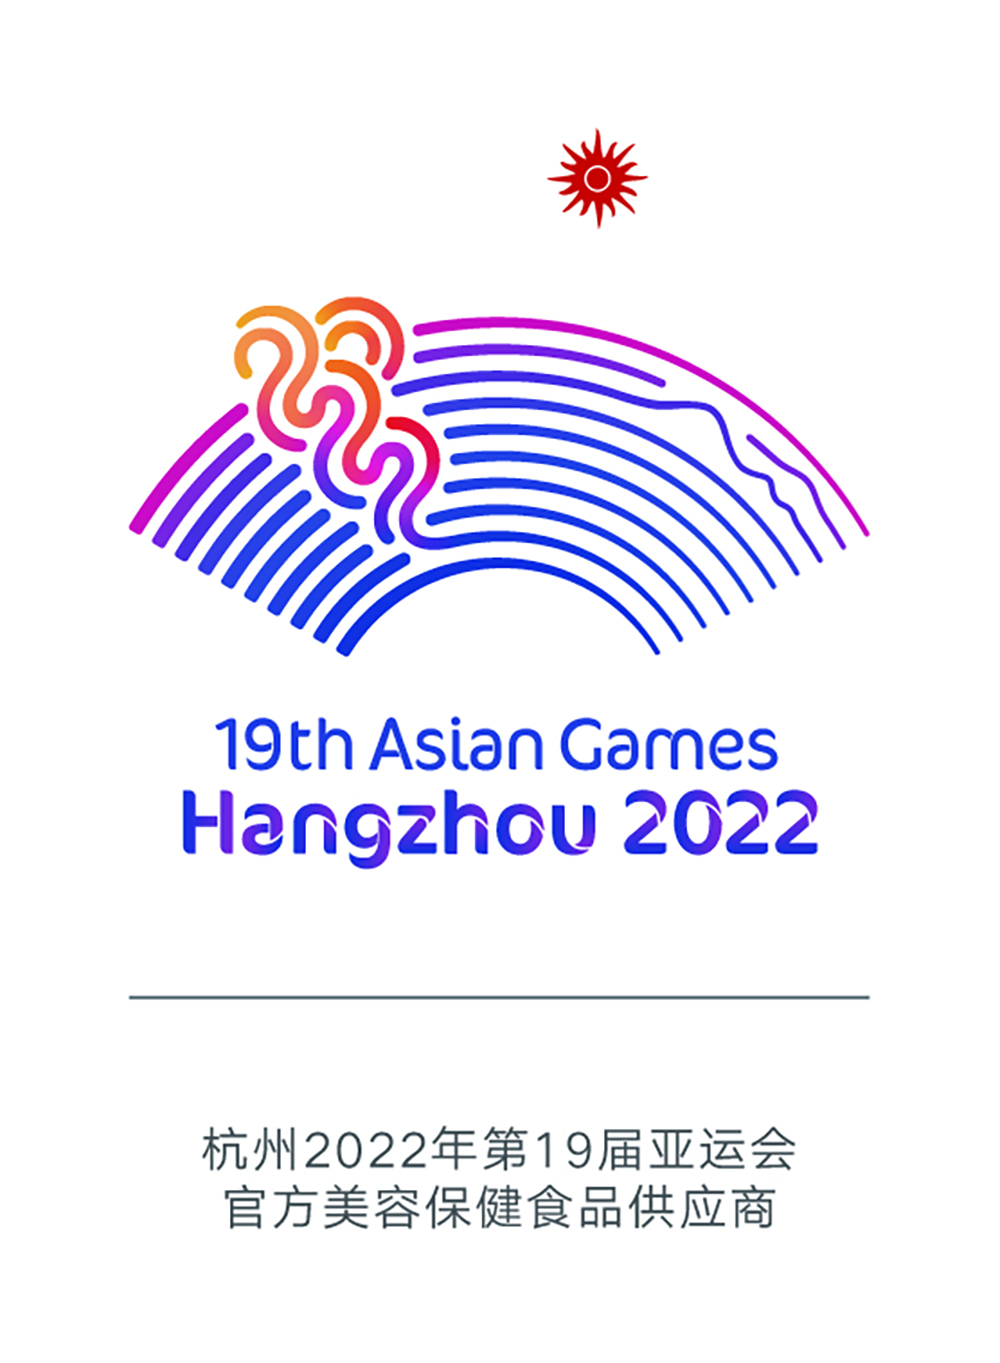 亚运会logo2 拷贝.jpg